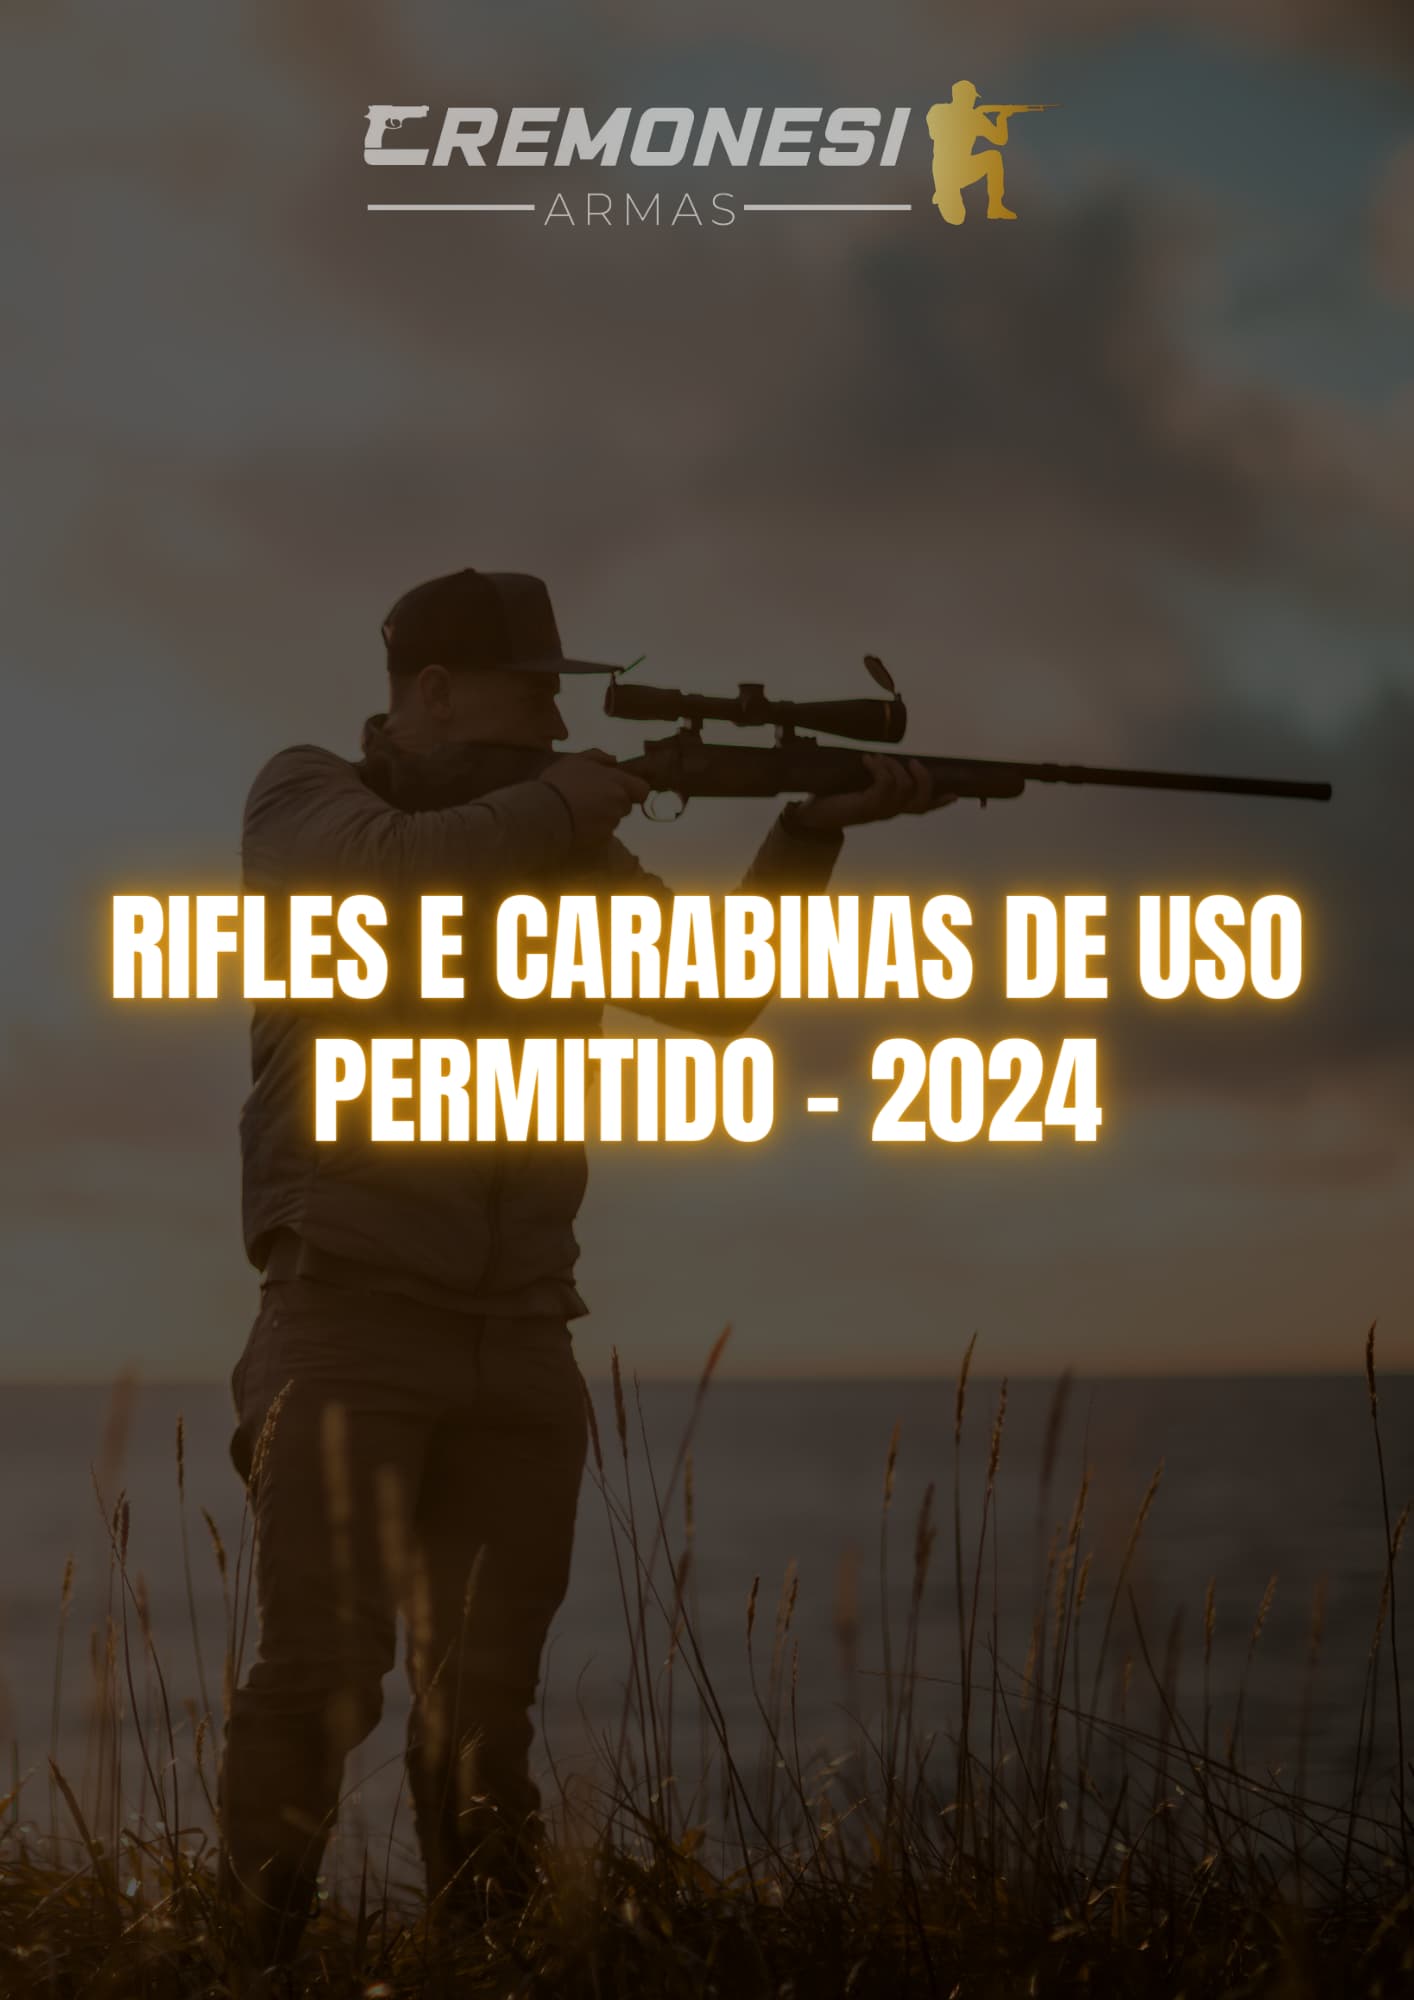 Rifles e carabinas de uso permitido - 2024